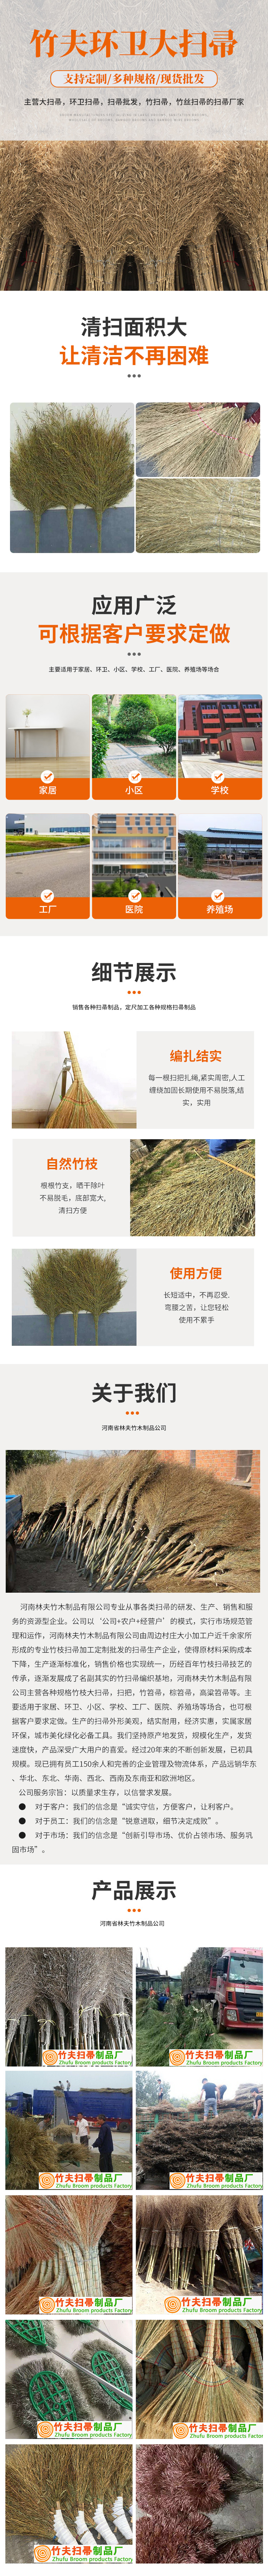 上海竹扫把哪里有卖